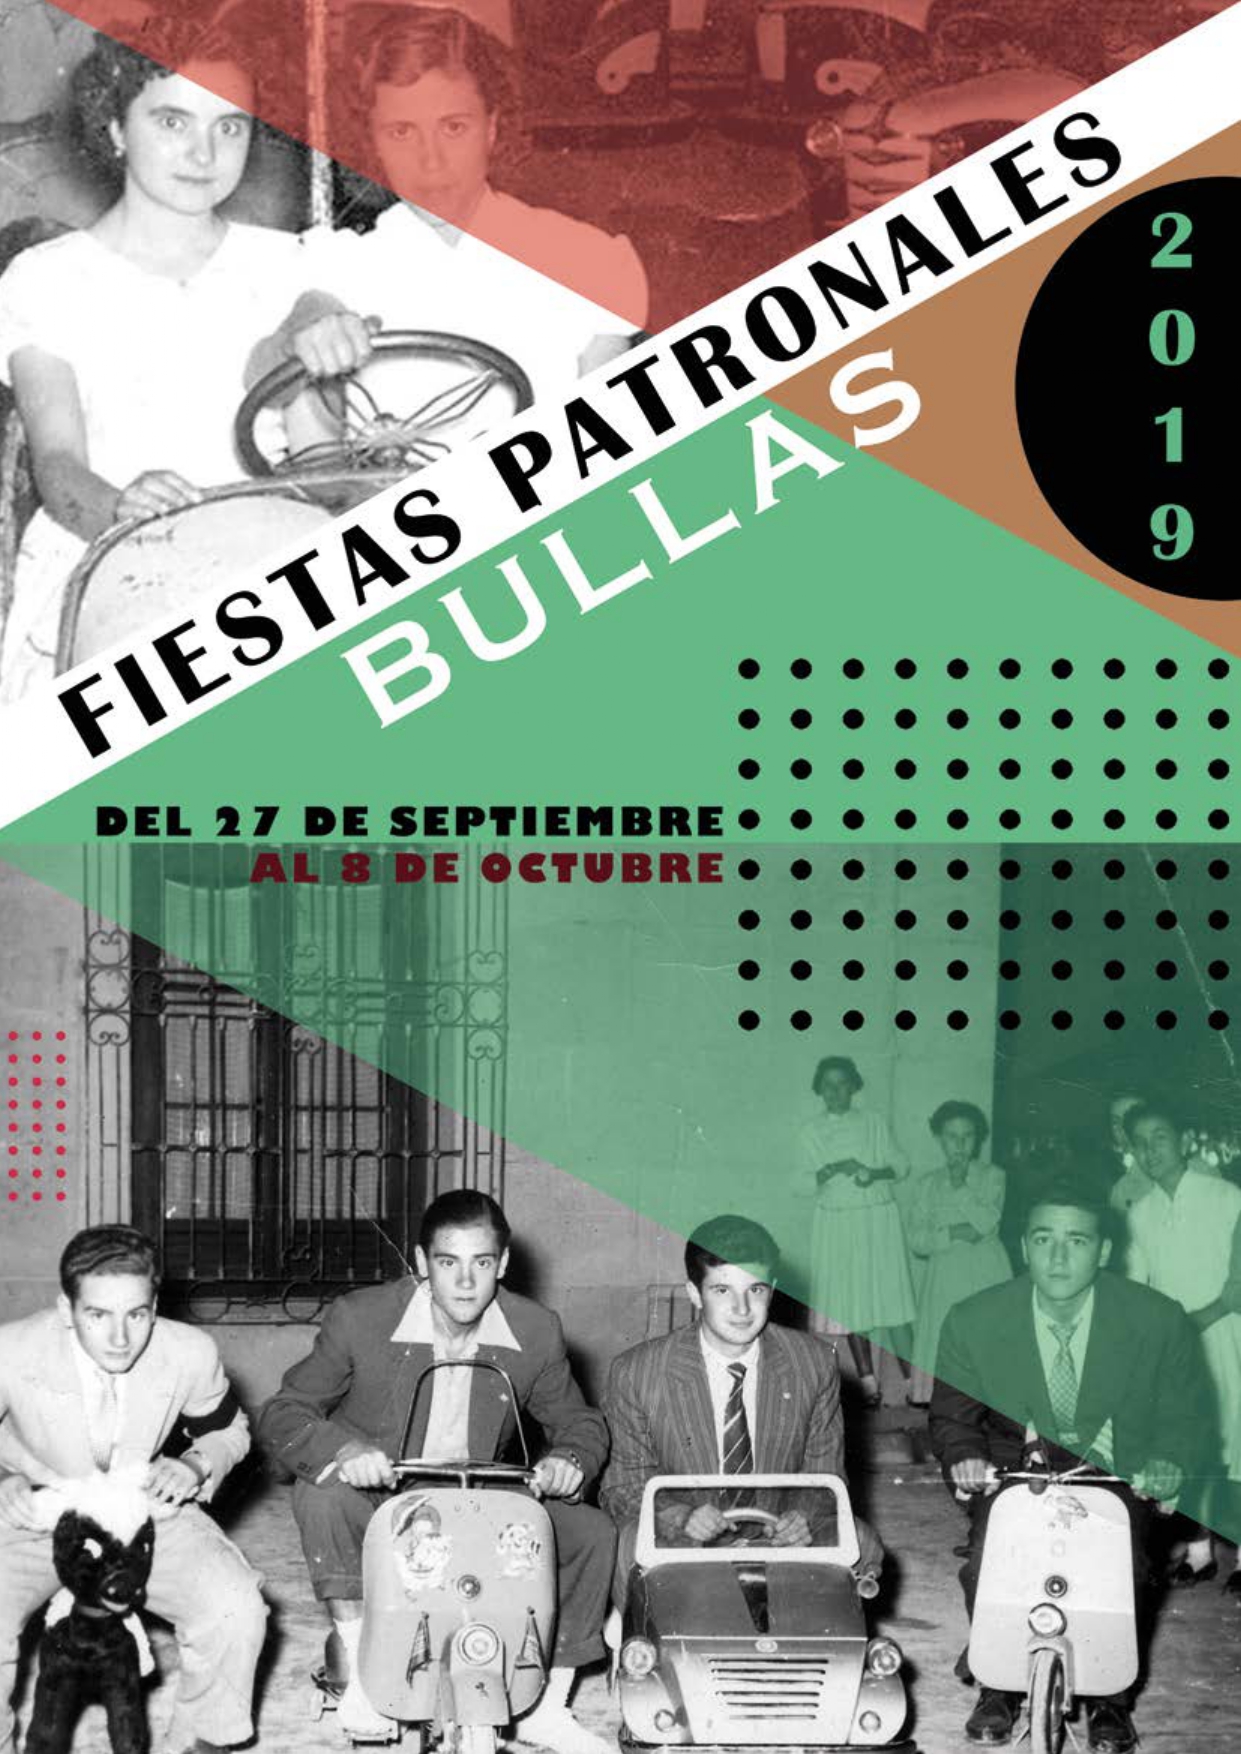 Libro-de-Fiestas-Bullas-2019-Pg.1-Pg.107-3.0.0_page-0001.jpg